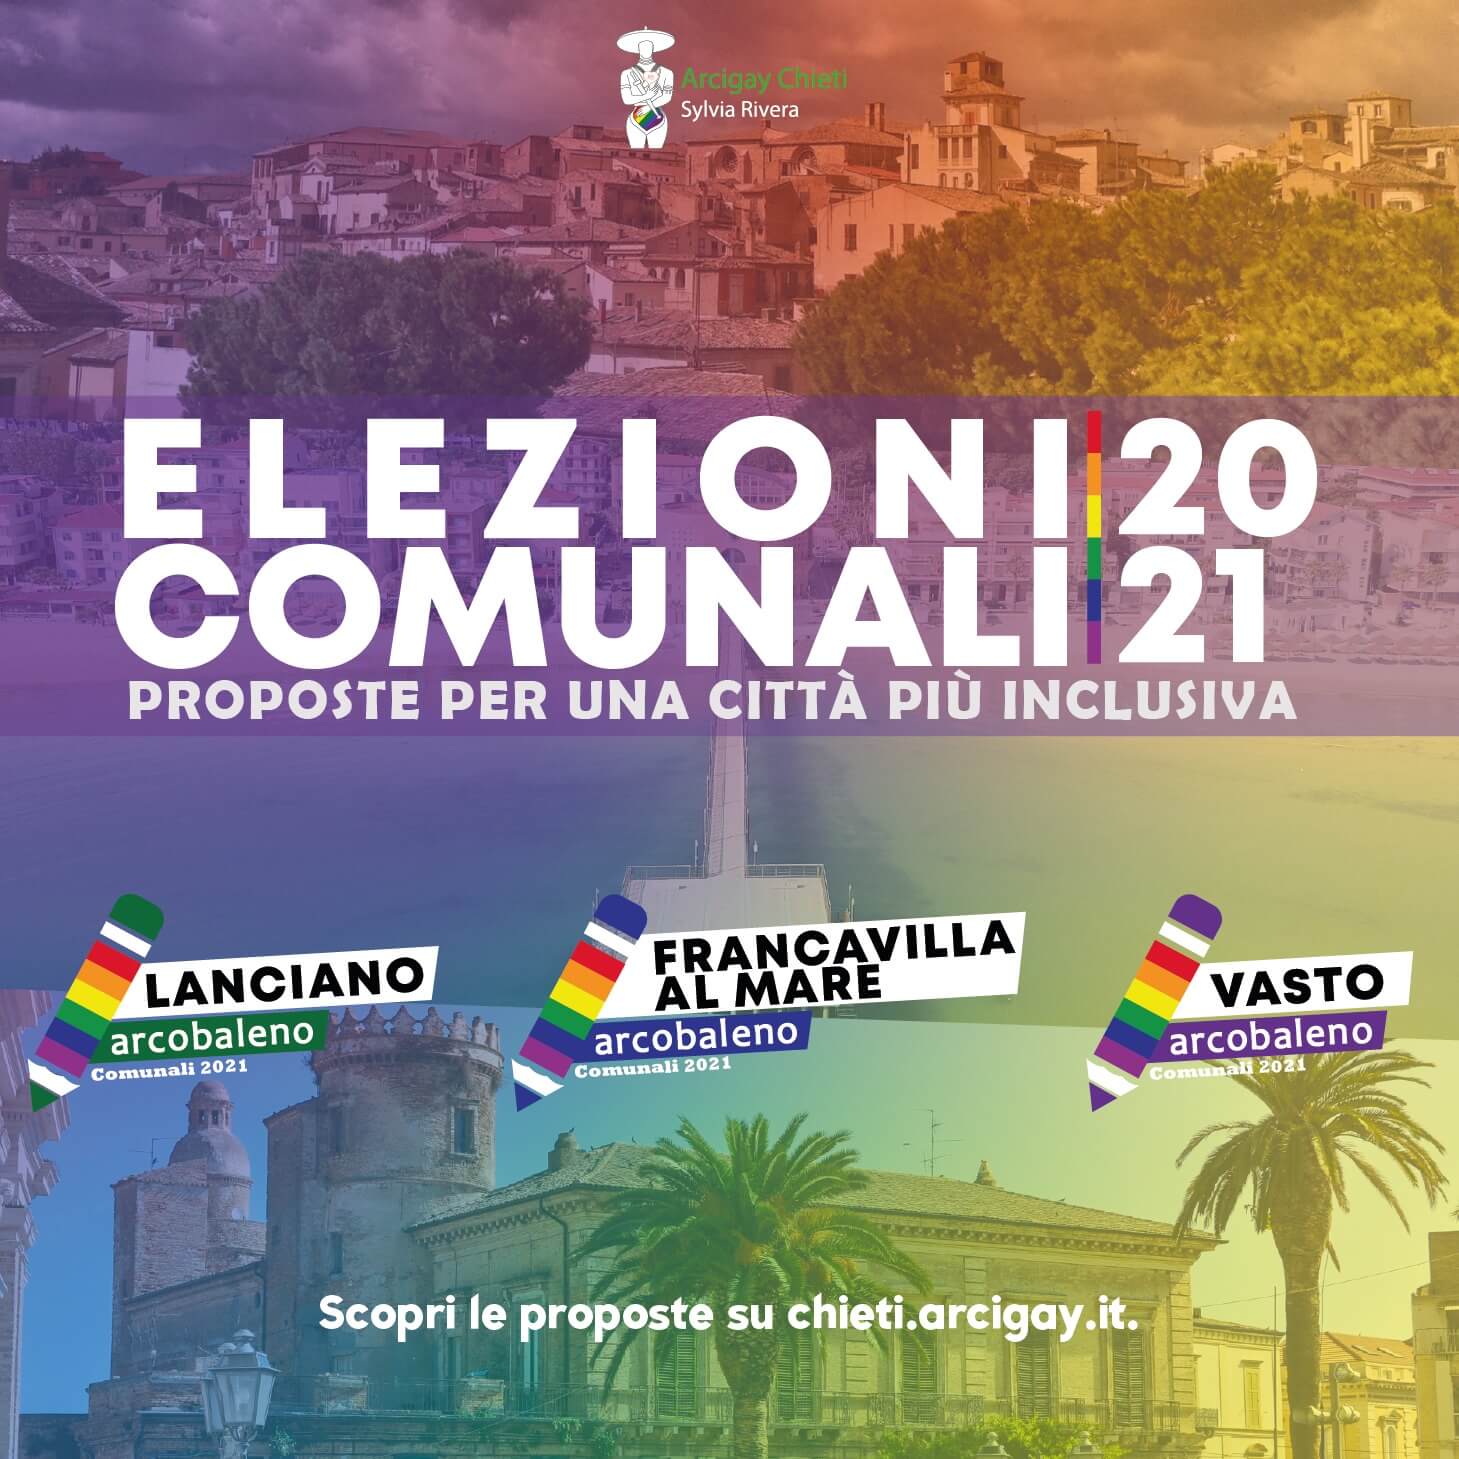 Abruzzo LGBT, qualcosa si muove: nasce una piattaforma arcobaleno - Abruzzo LGBT qualcosa si muove 2 - Gay.it